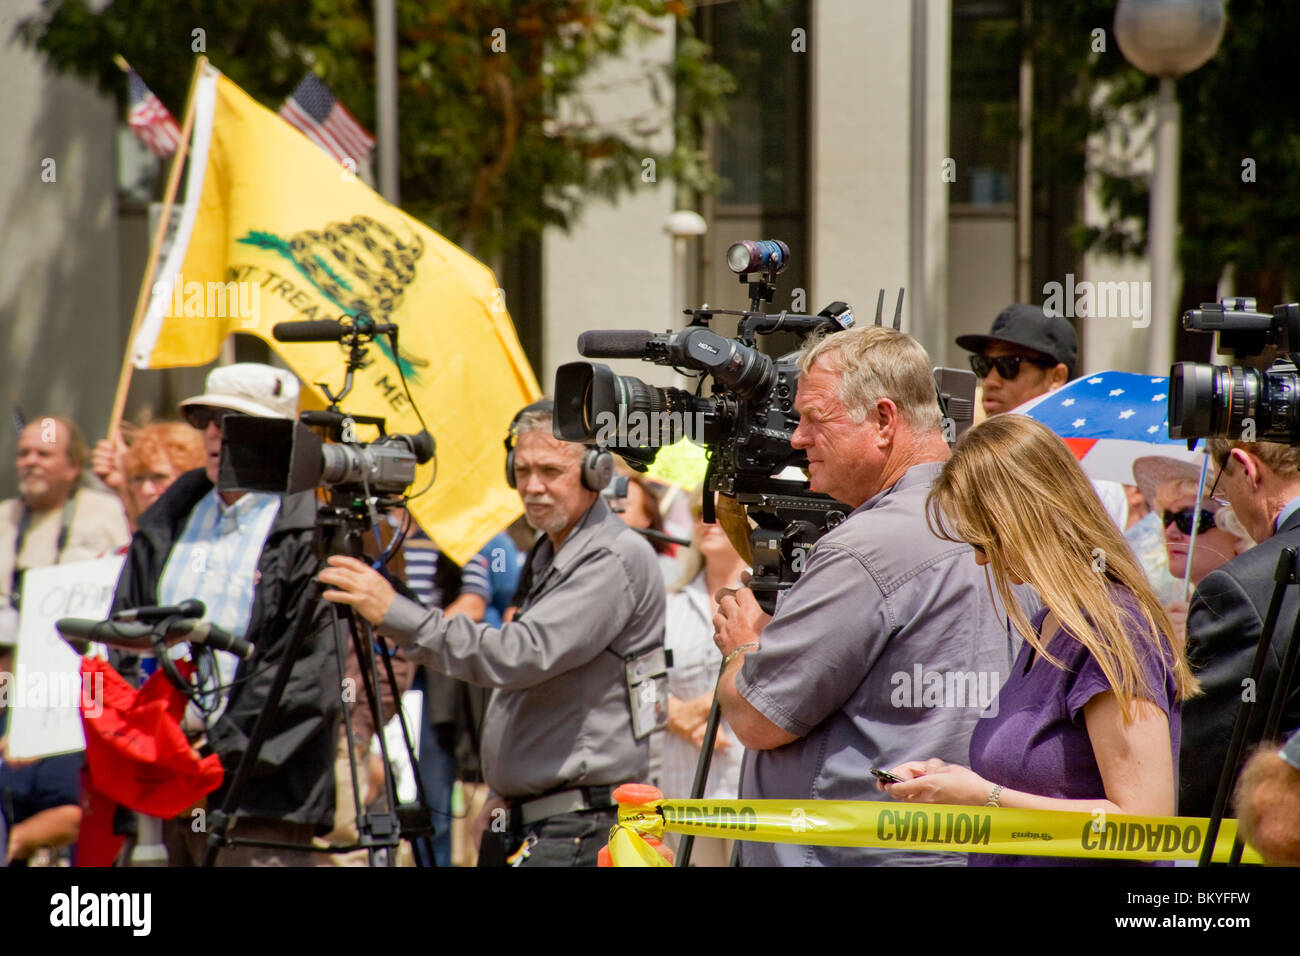 TV Nachrichten Kamerateams decken eine "Tea Party"-Kundgebung am 15. April (Steuer-Tag) in Santa Ana, Kalifornien. Beachten Sie die Flagge im Hintergrund. Stockfoto